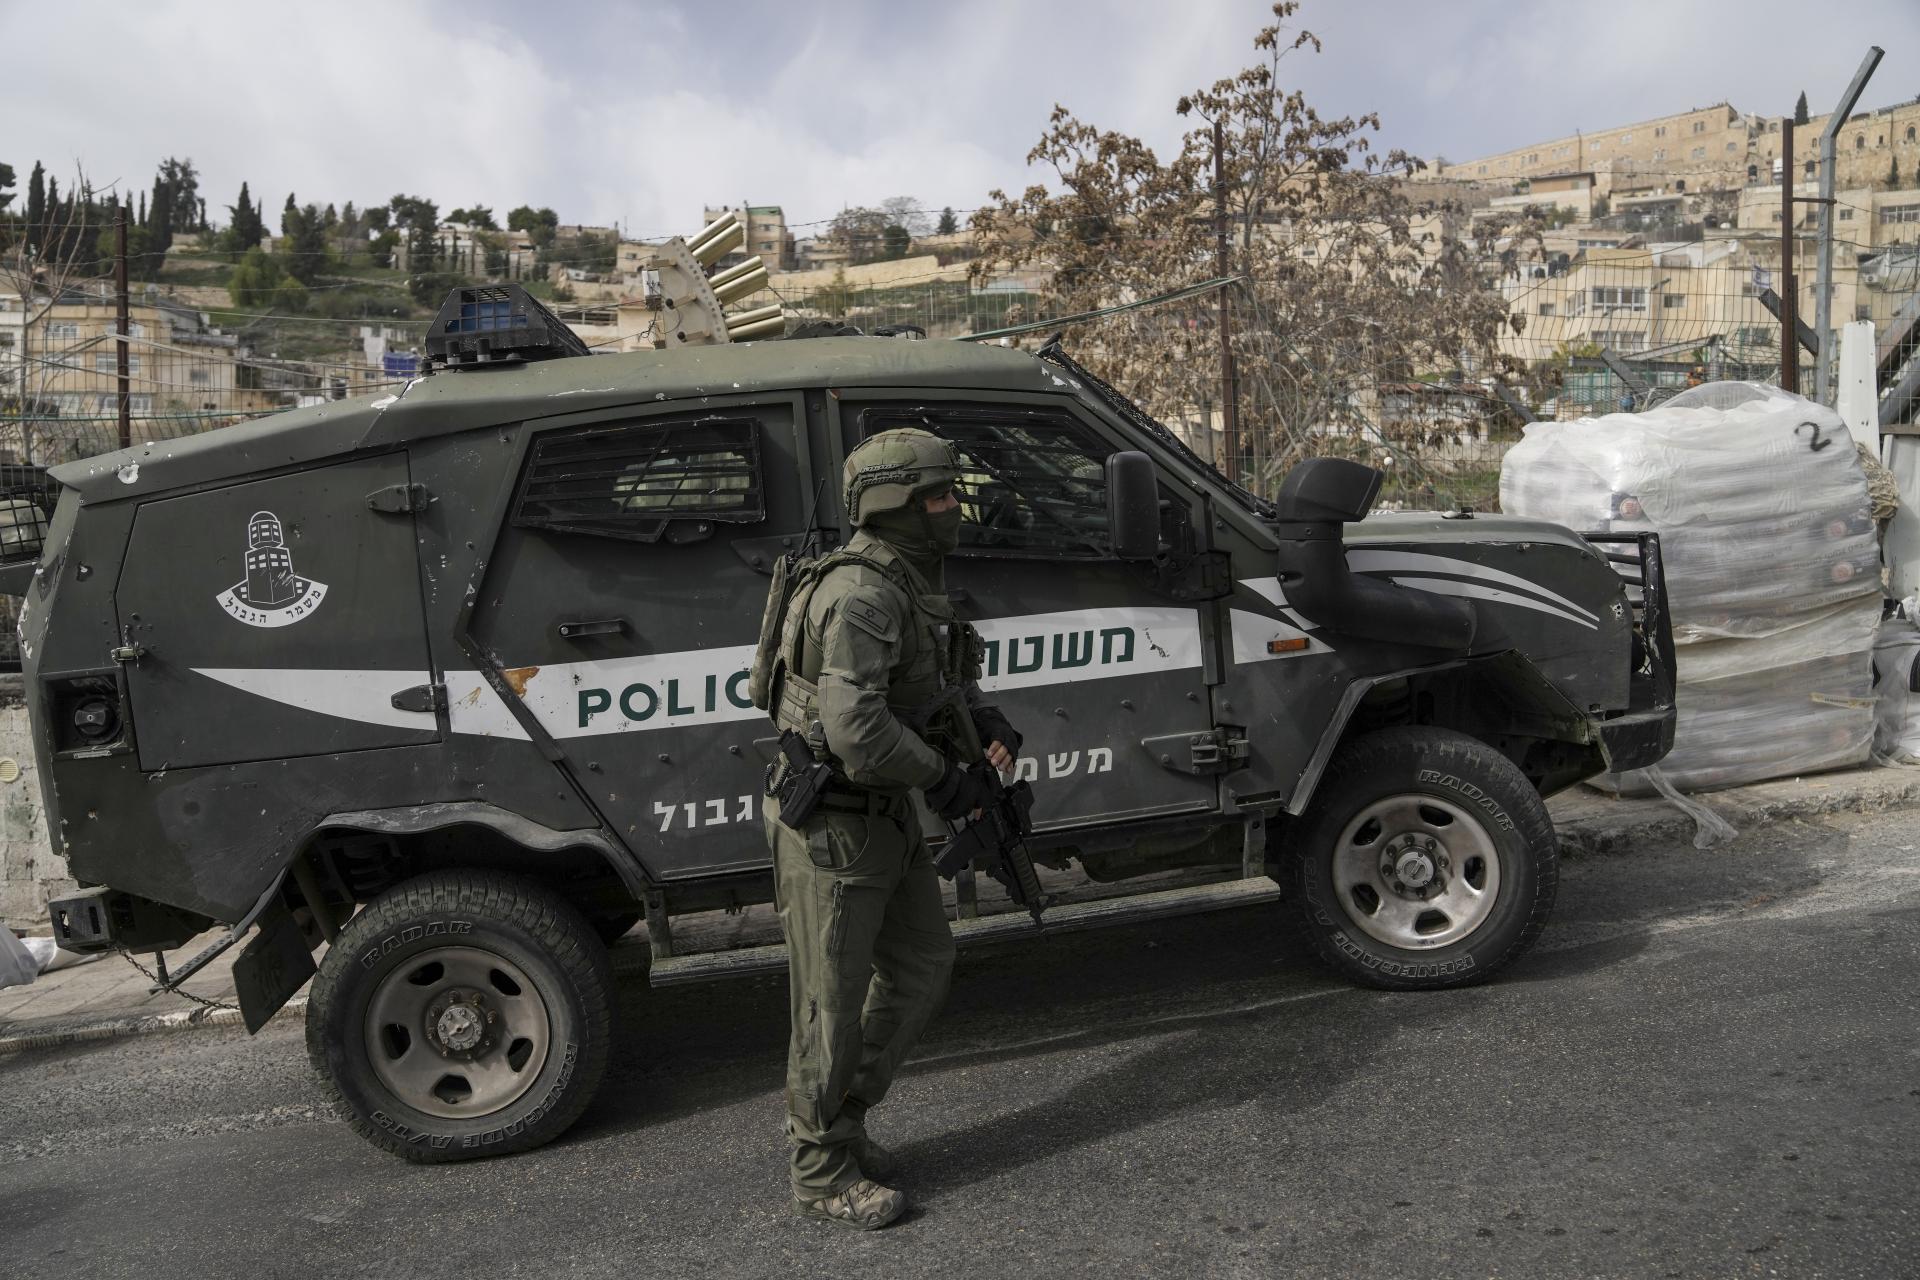 Strelecom, ktorý v sobotu zranil dve osoby v Izraeli, bol 13-ročný Palestínčan